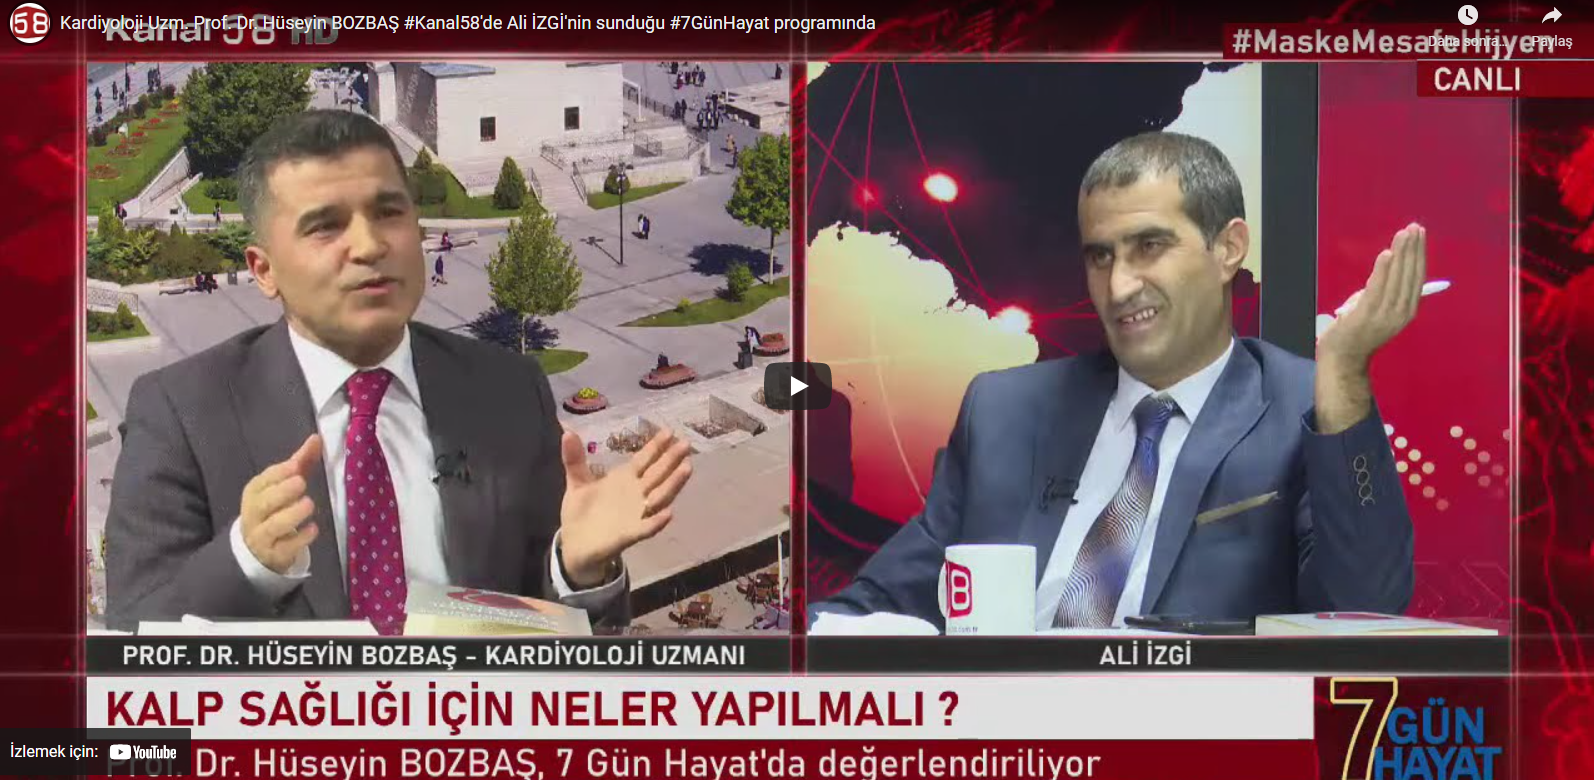 Prof Dr Hüseyin Bozbaş Kanal58de yayında